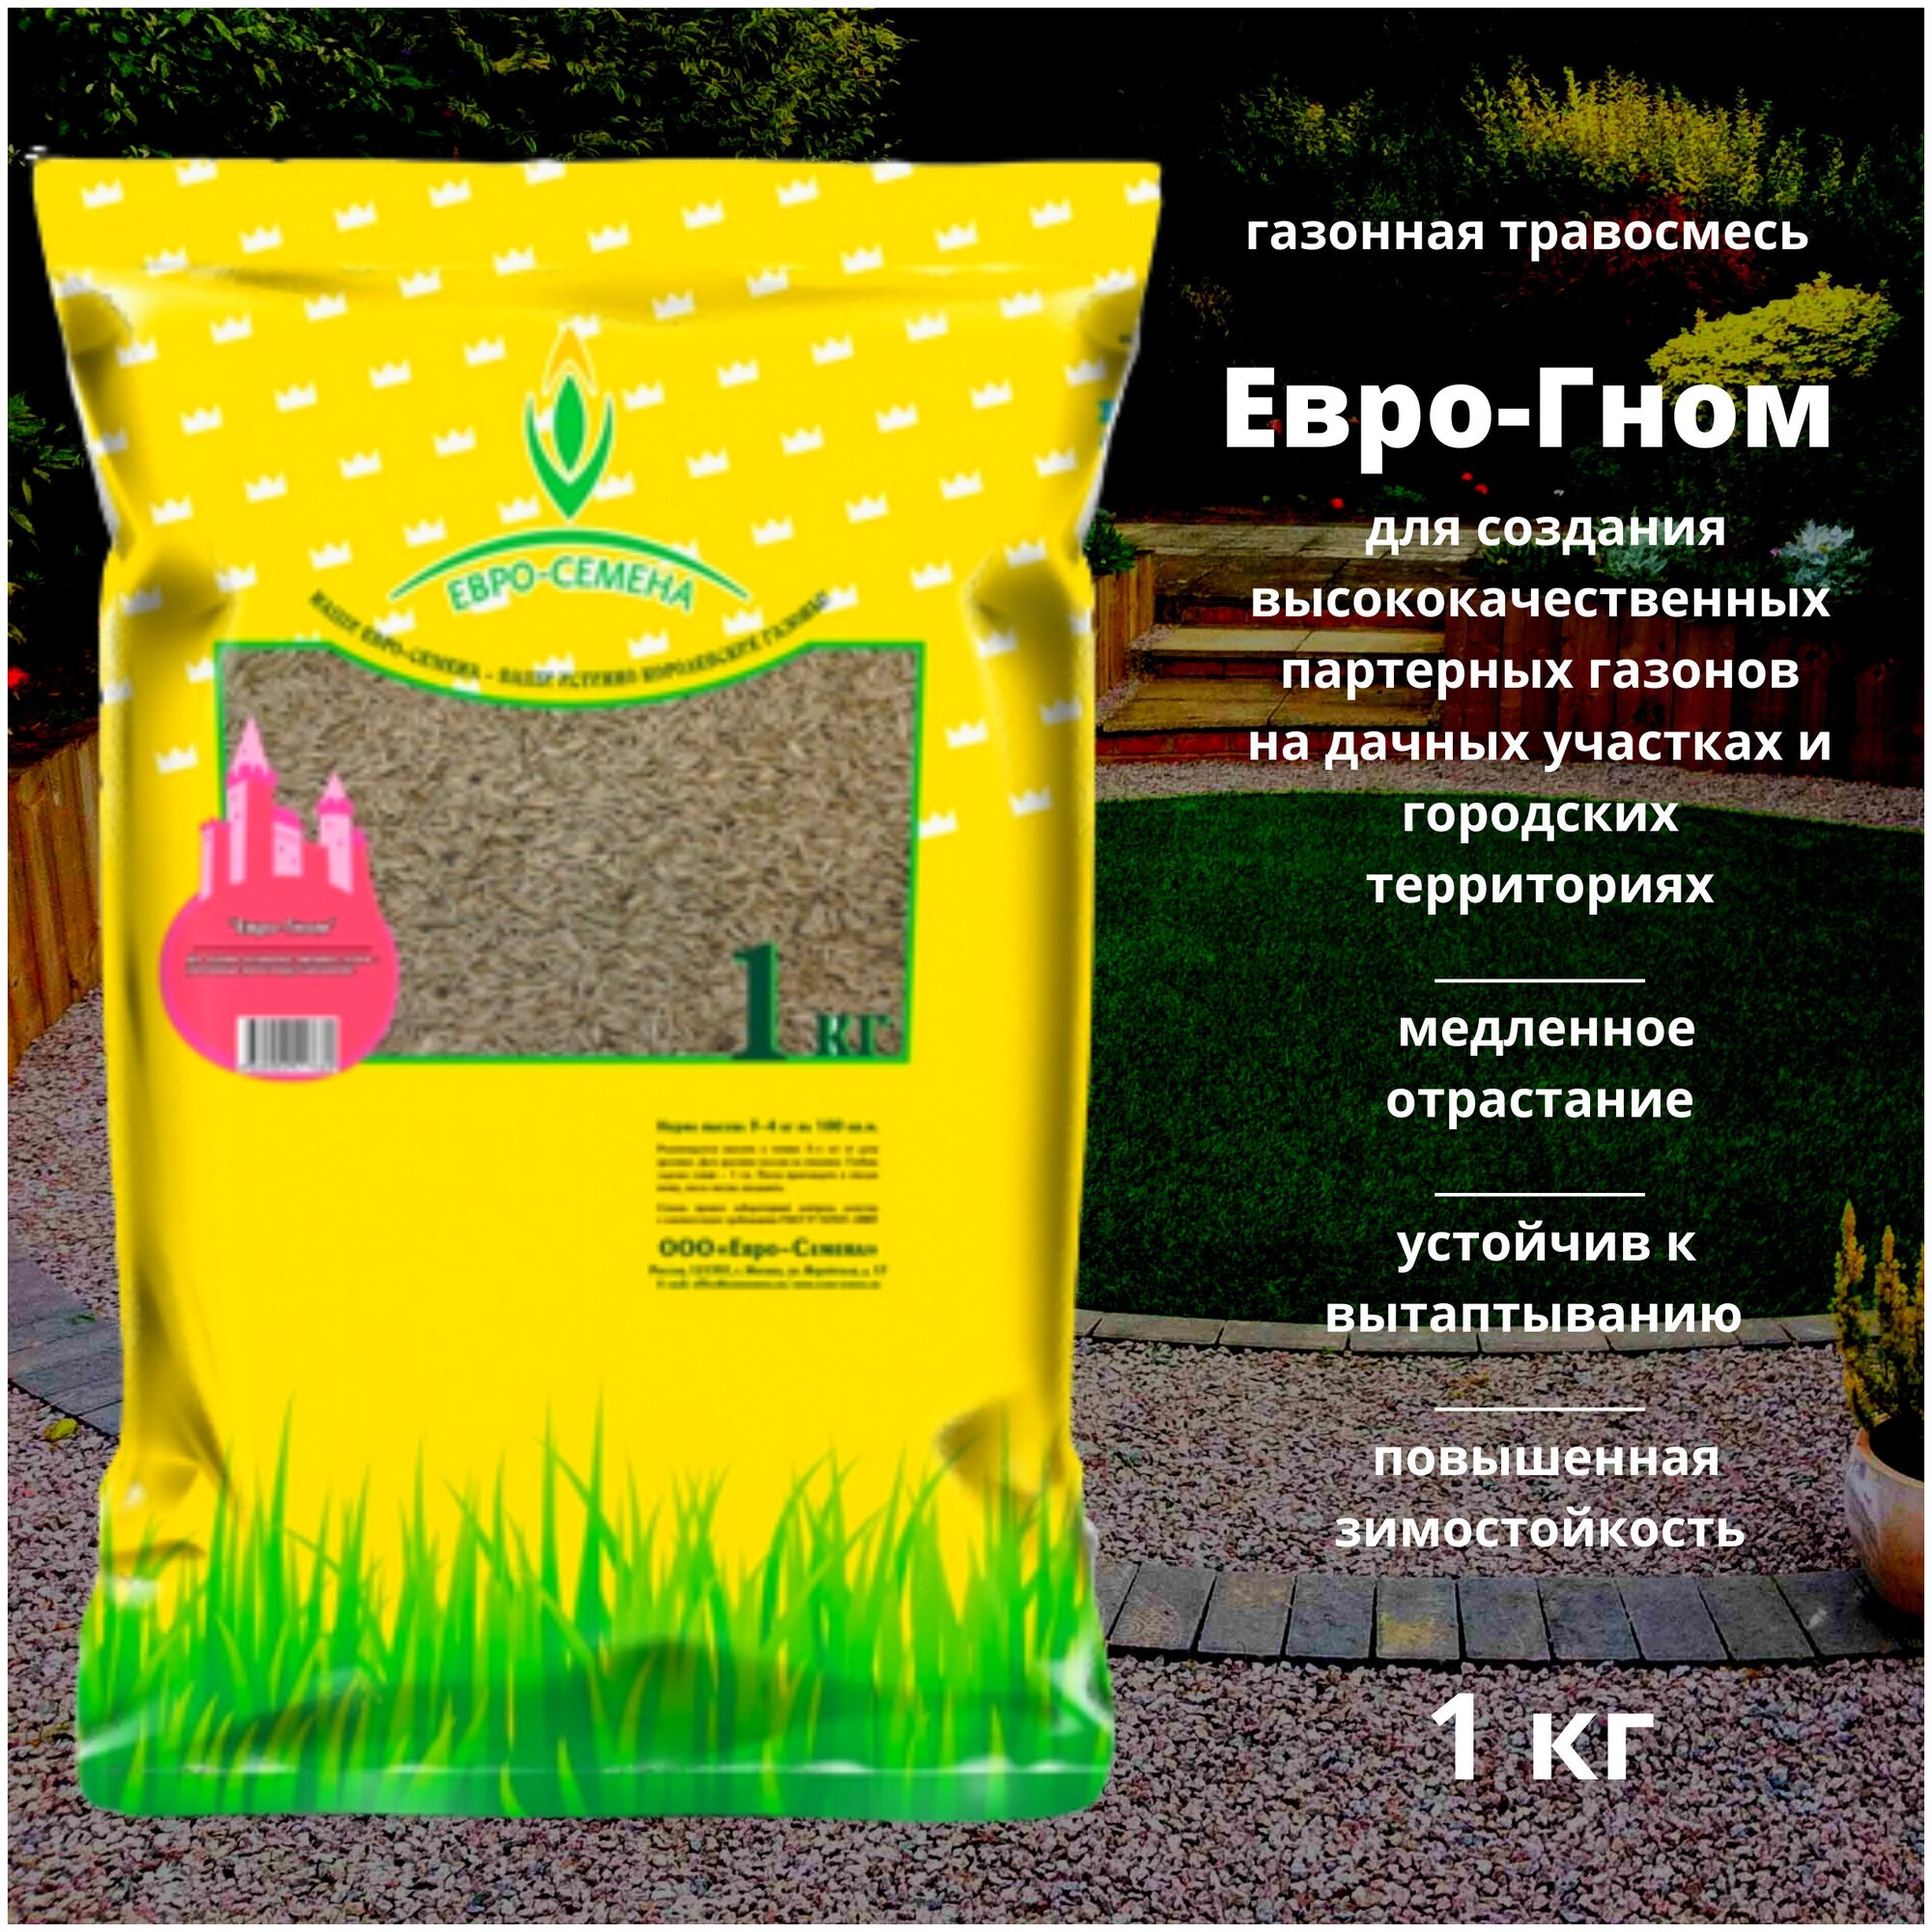 Газонная травосмесь (семена) Евро-Гном 1 кг для создания высококачественных партерных газонов на дачных участках и городских территориях